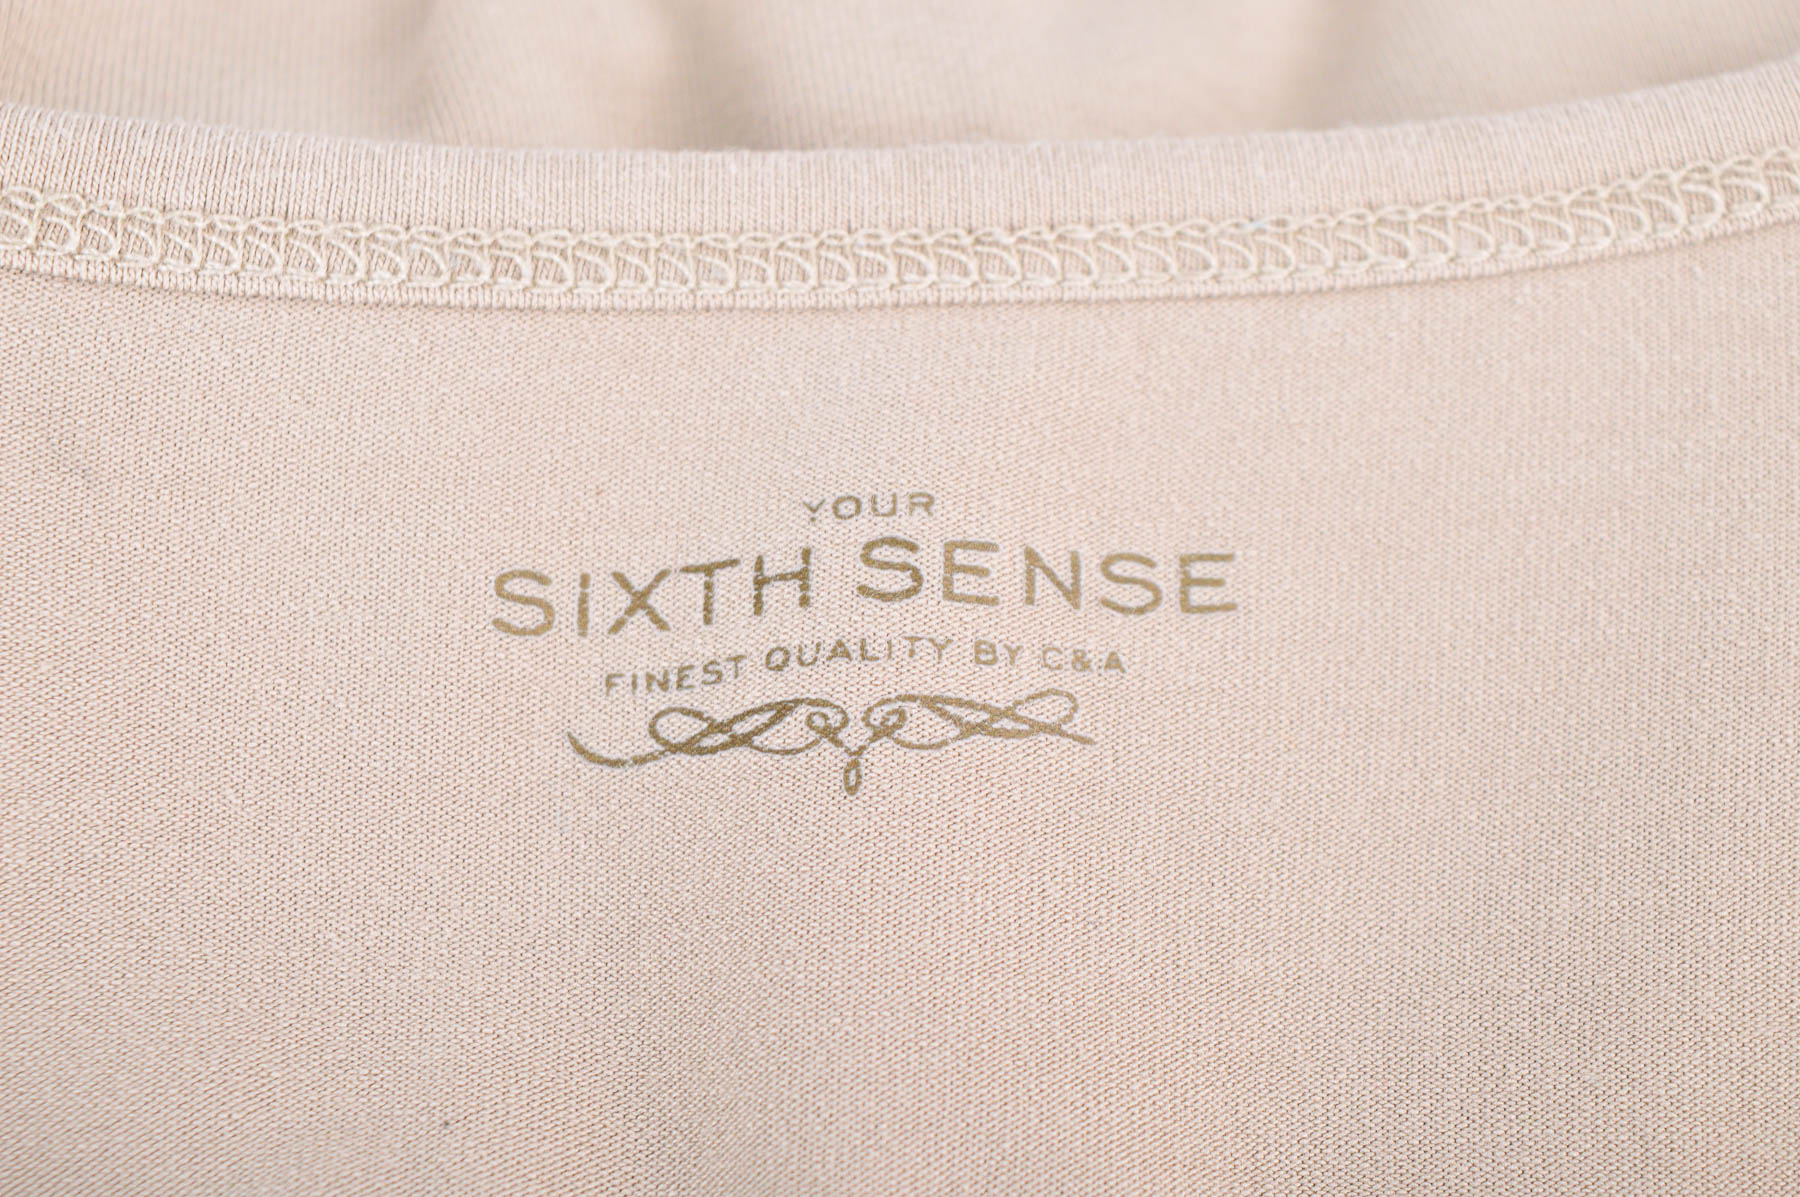 Γυναικεία μπλούζα - Your Sixth Sense - 2